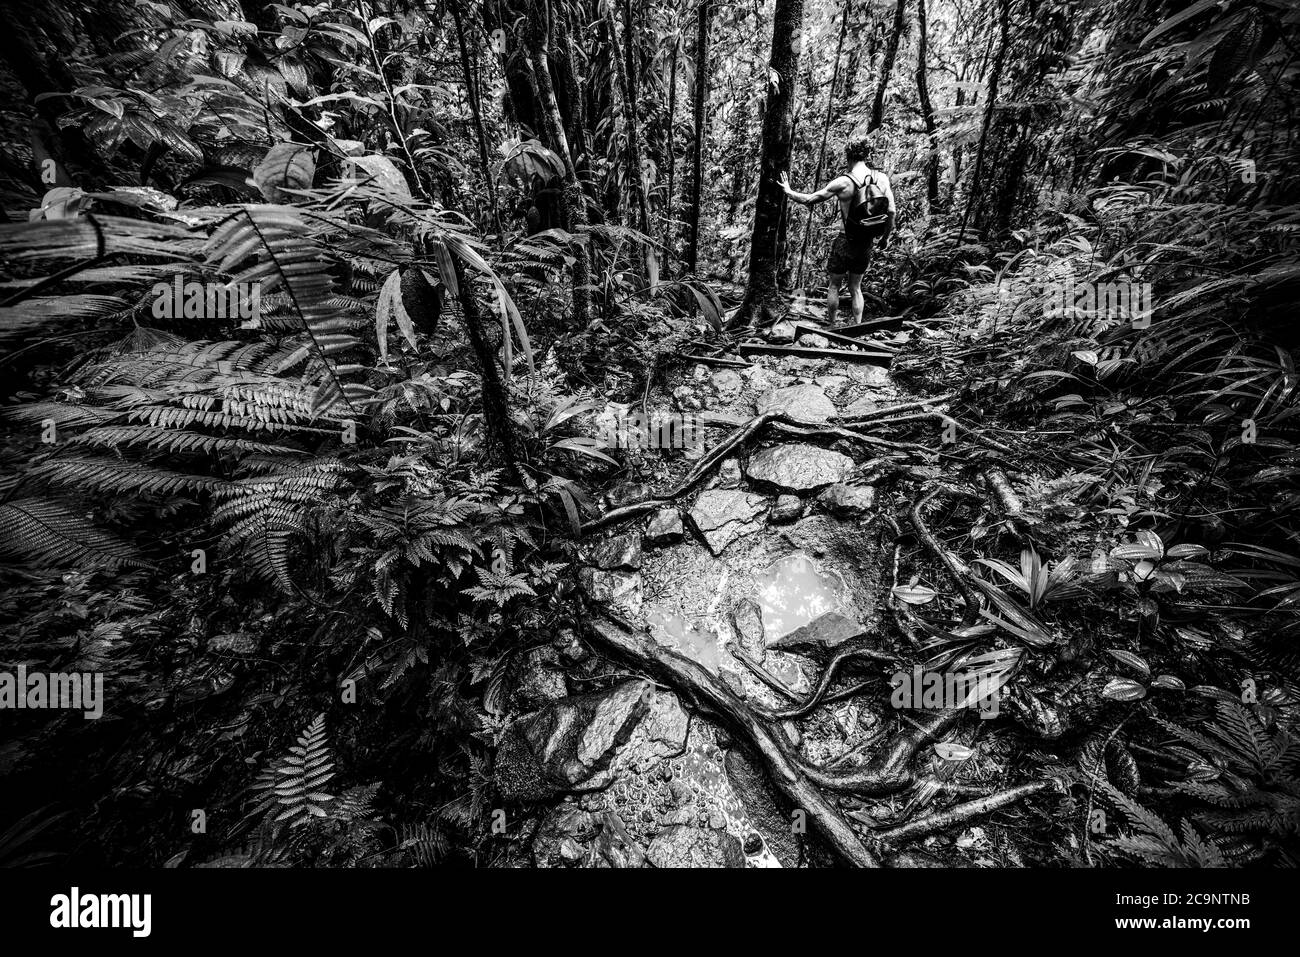 Hombre explorando la selva en Guadalupe, indias Occidentales Francesas. Antillas menores, Caribe. Efecto blanco y negro Foto de stock